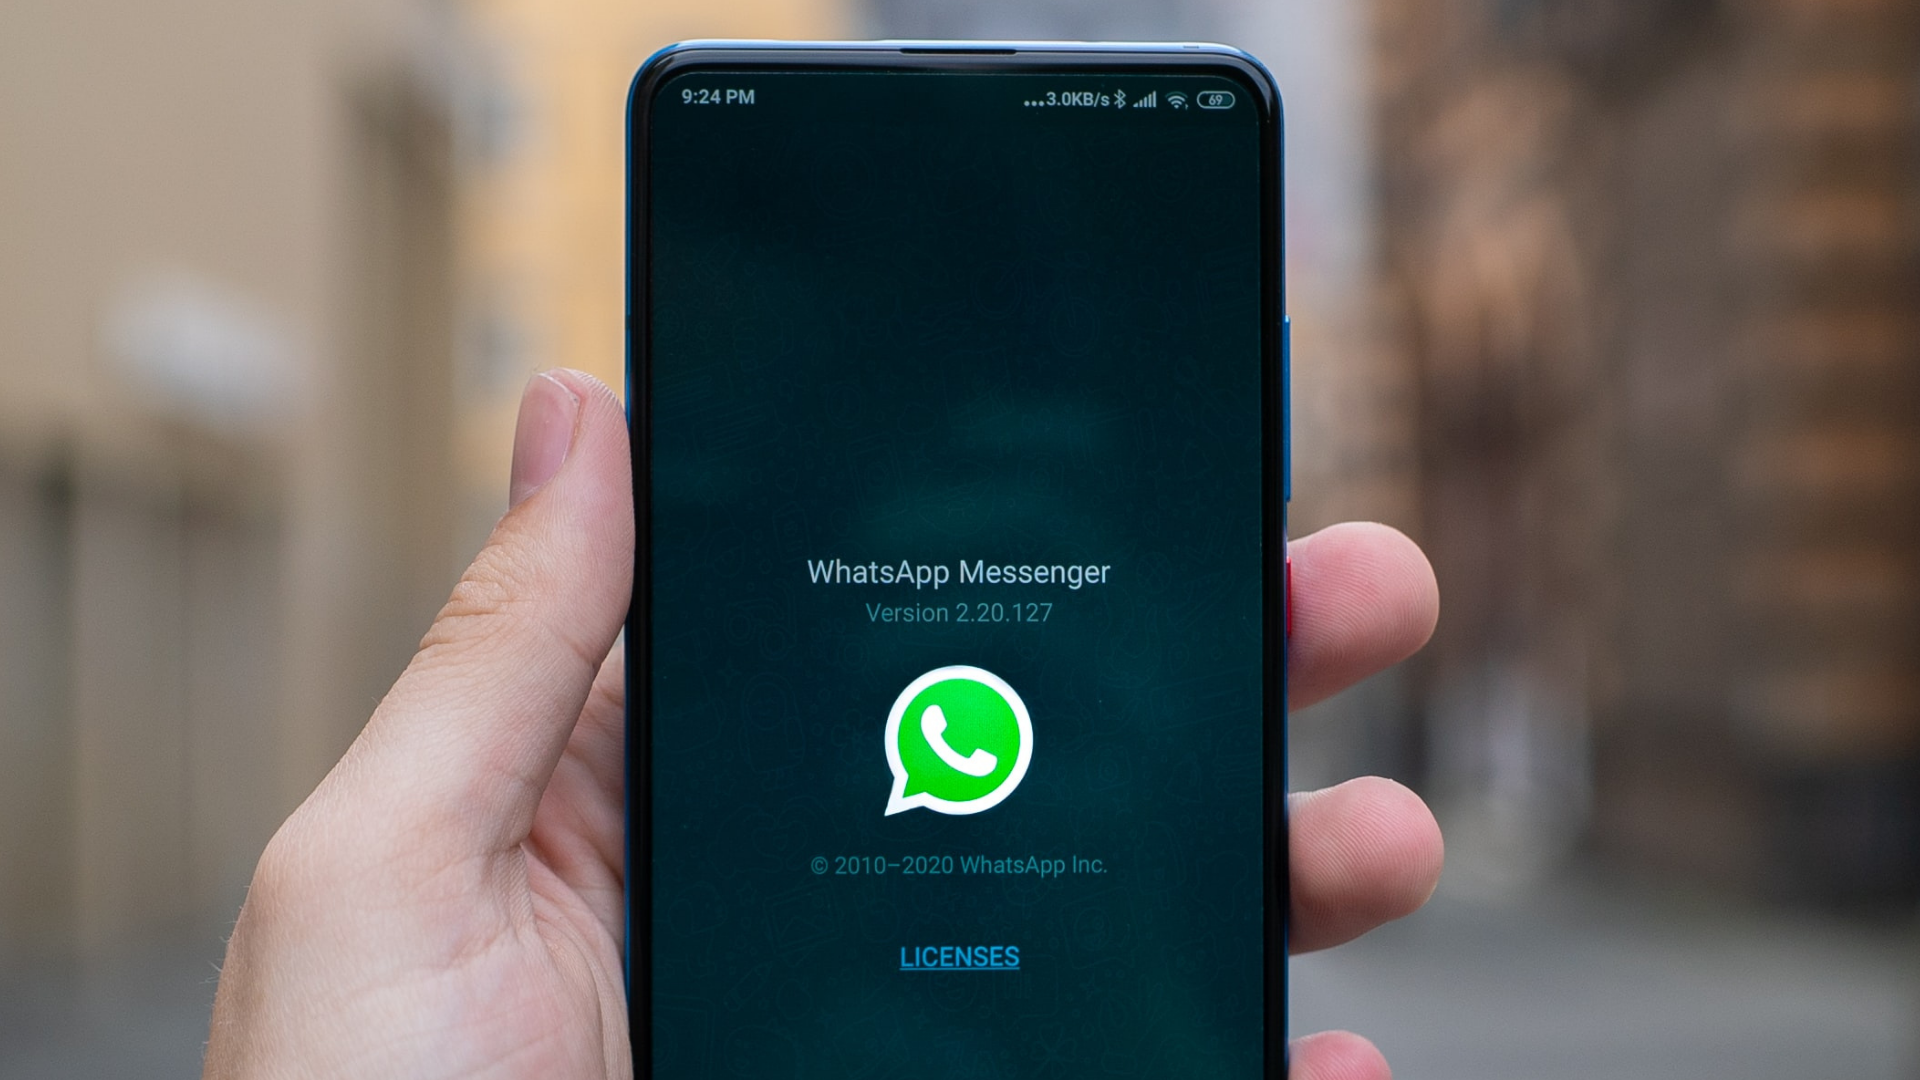 WhatsApp viola LGPD ao obrigar envio de dados ao Facebook, dizem autoridades | Legislação